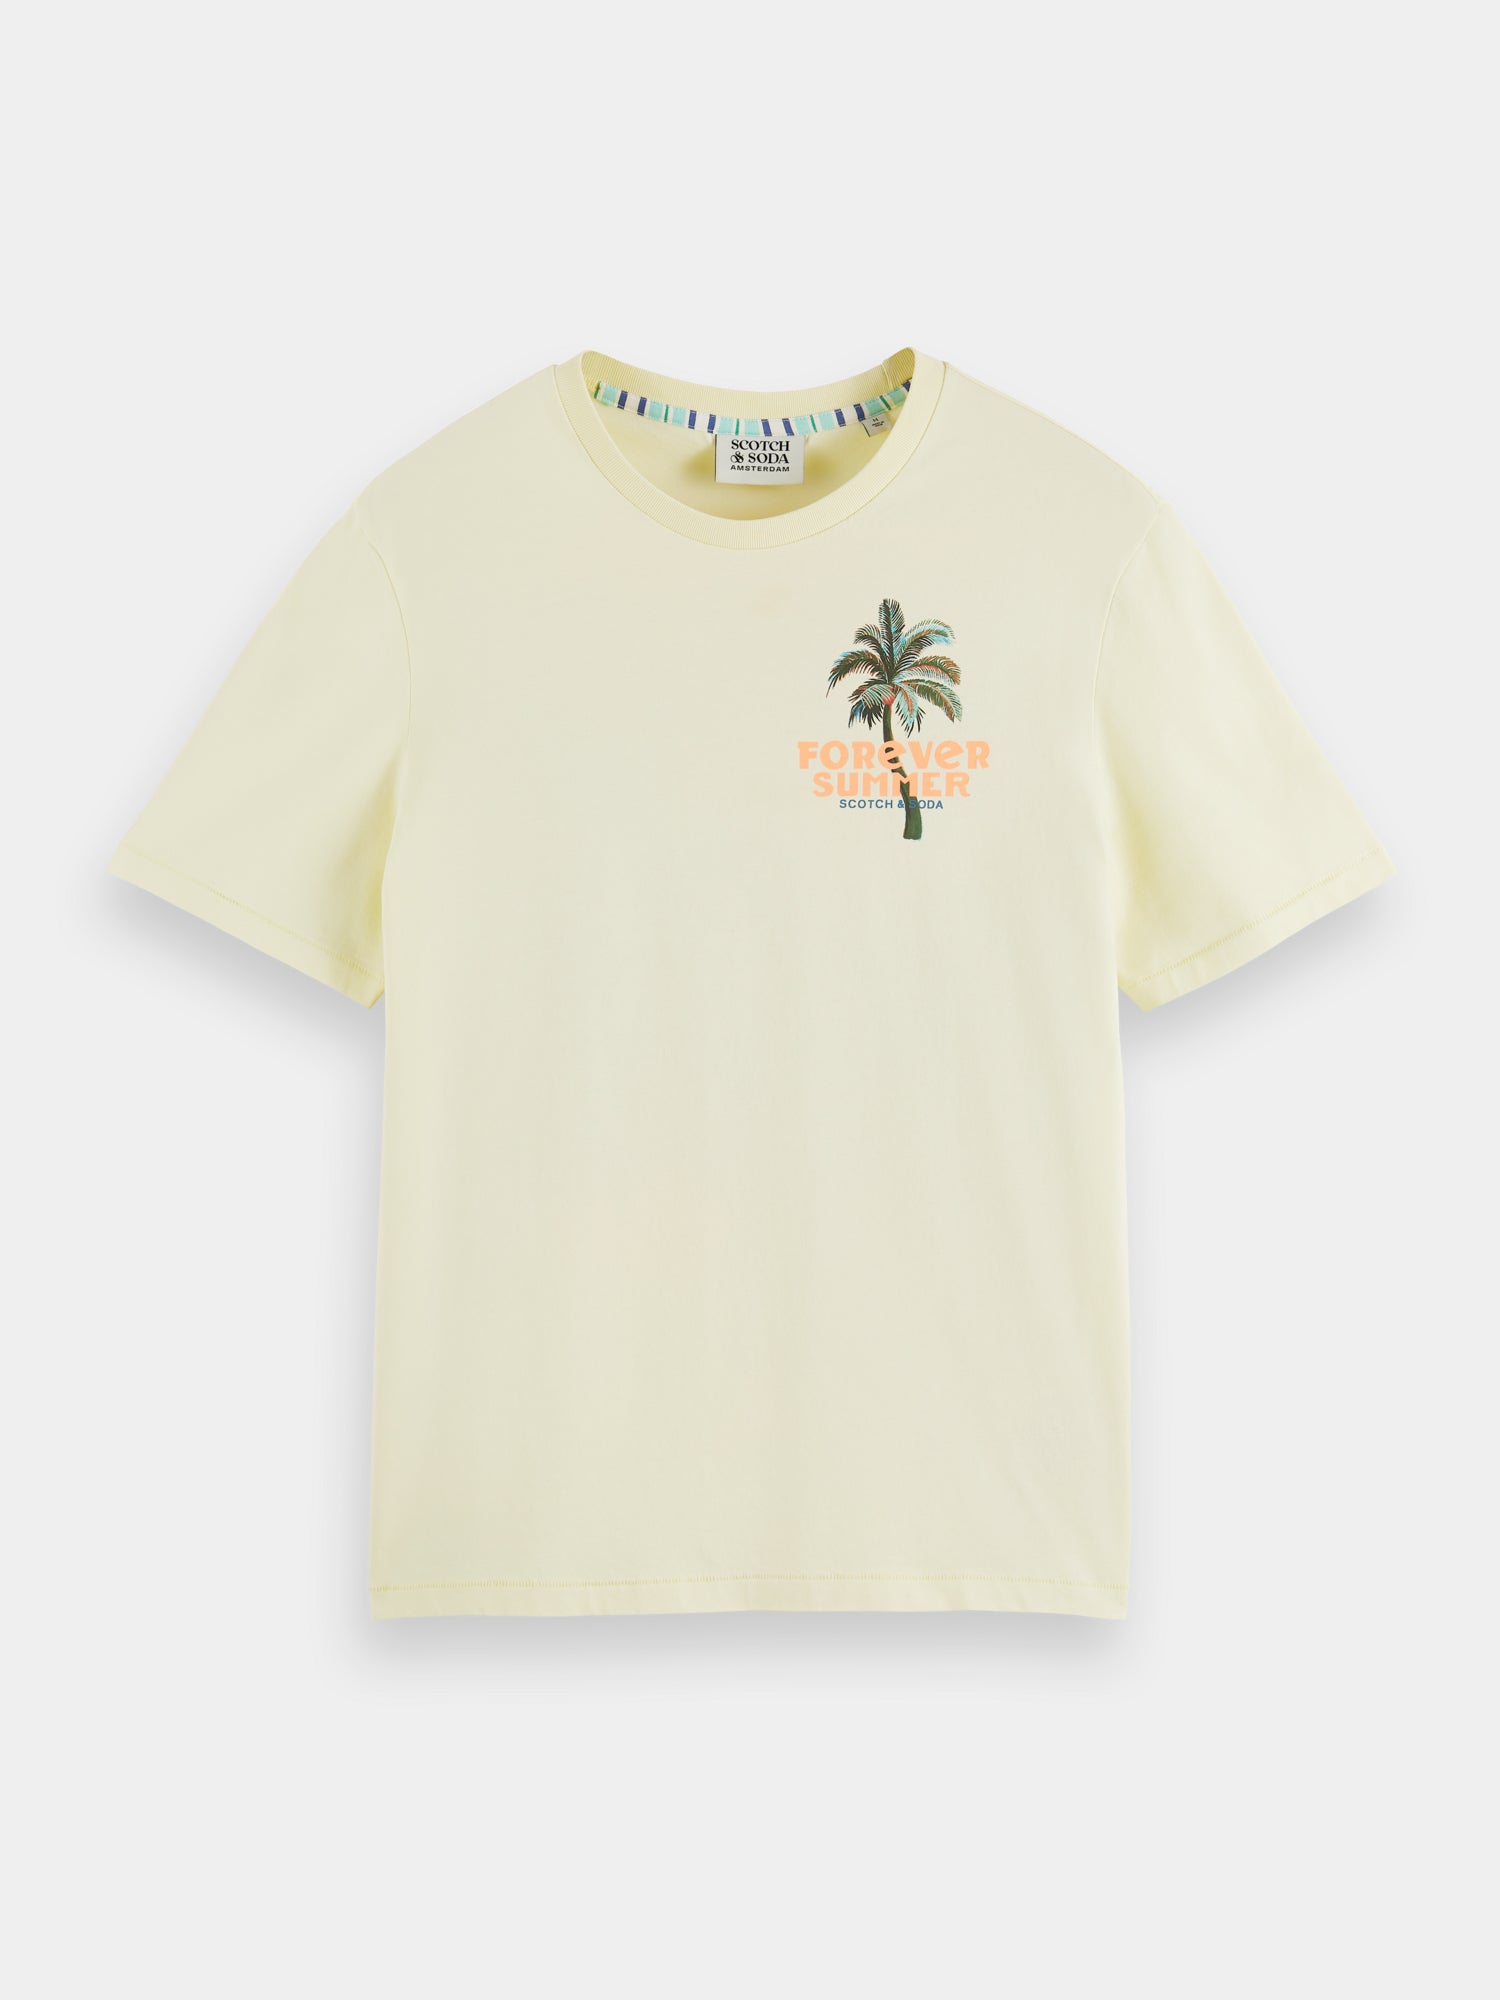 Endless summer artwork t-shirt - Banana